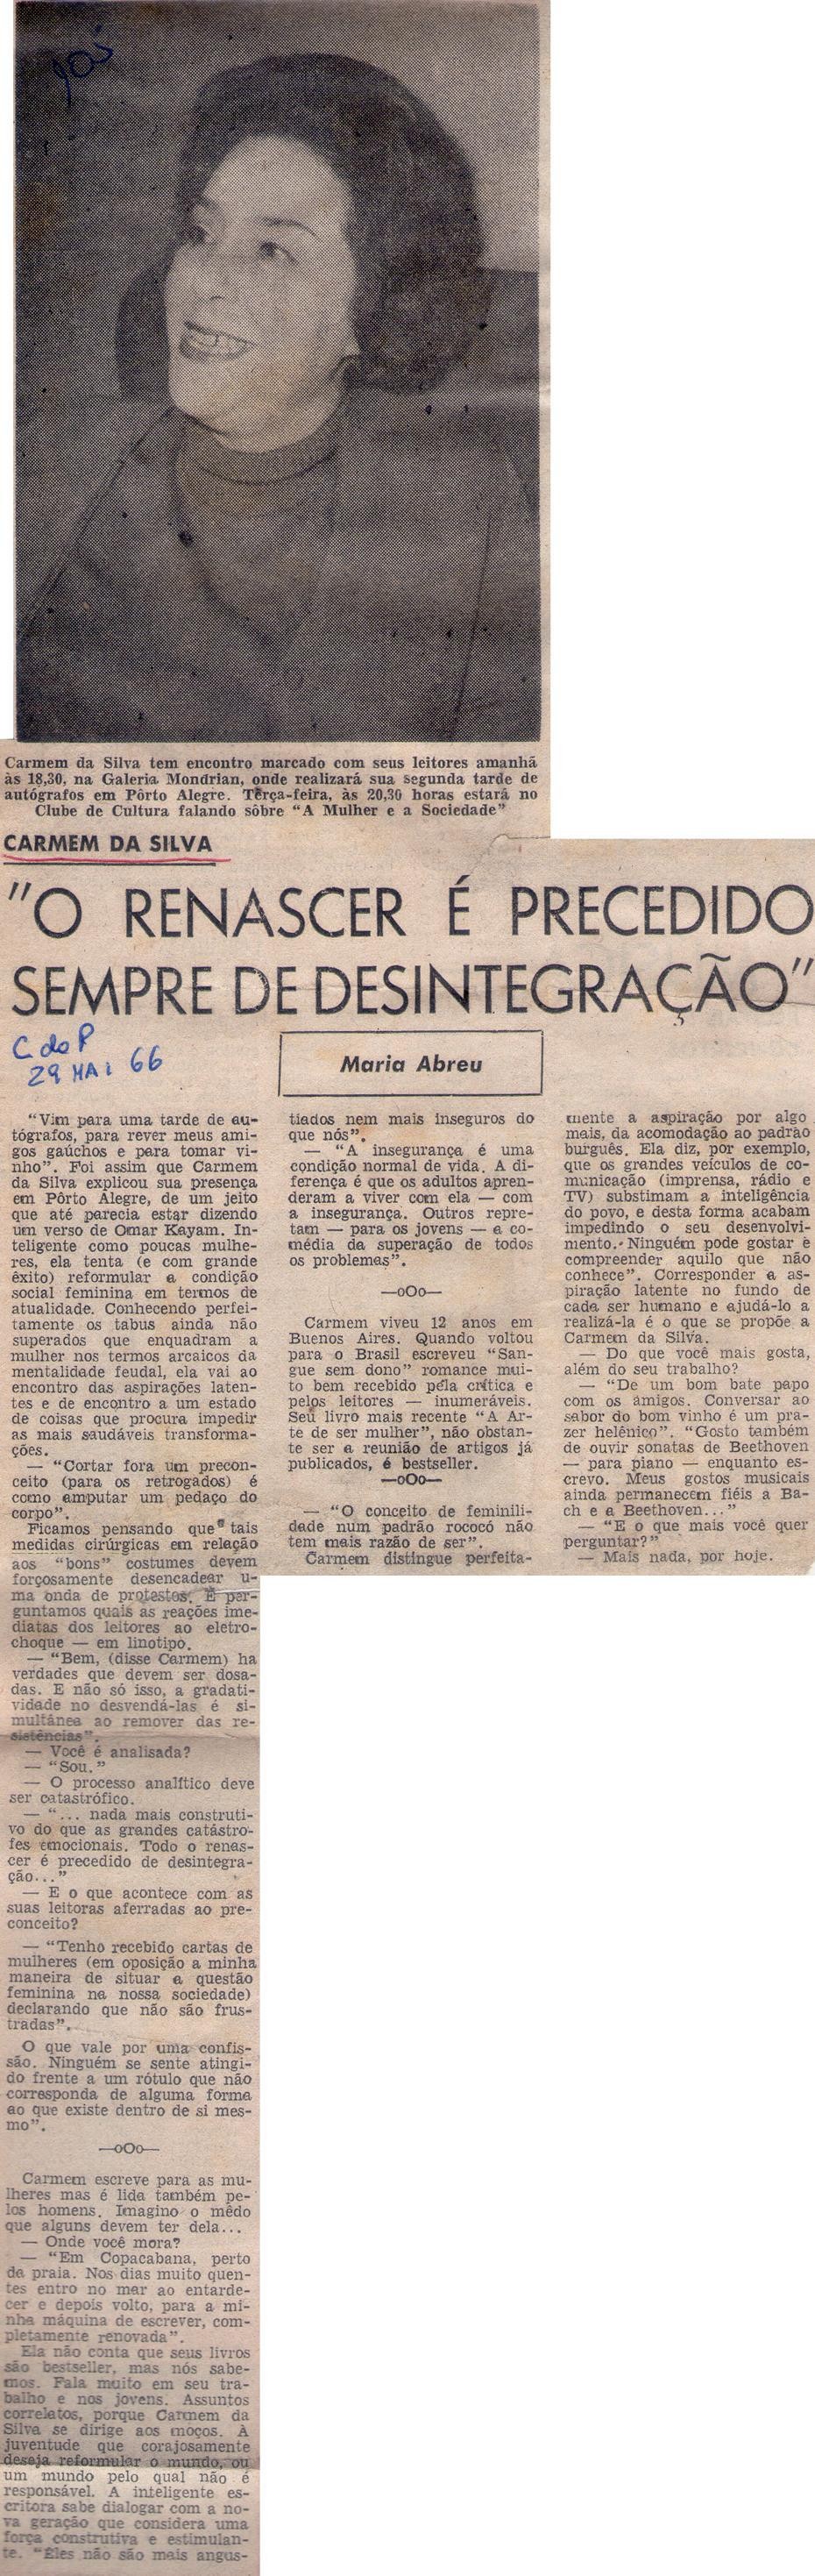 29 de Maio de 1966 - Correio do Povo. "O renascer é precedido sempre de desintegração".